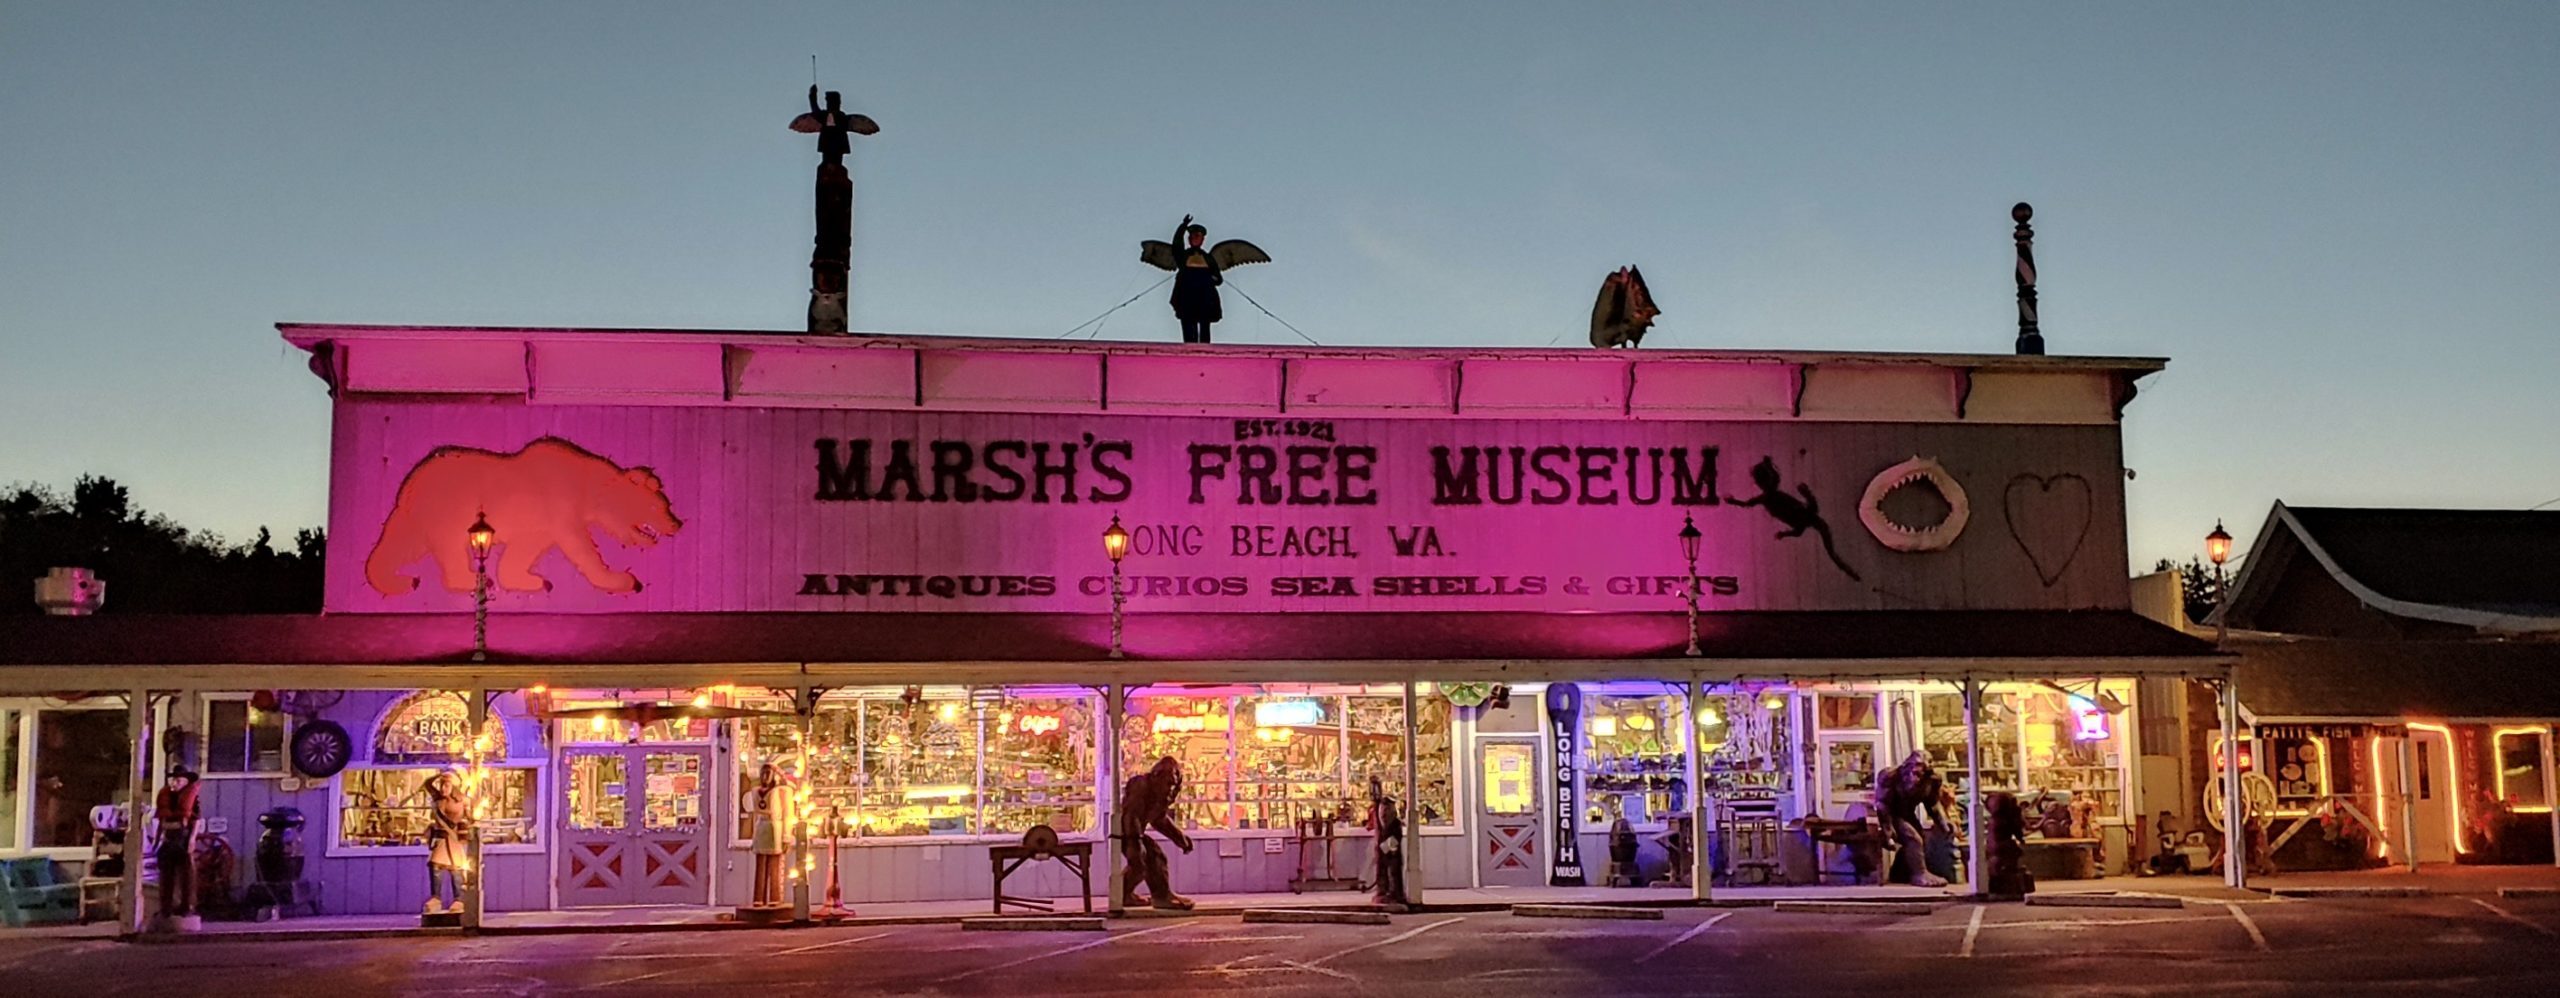 Marsh’s Free Museum